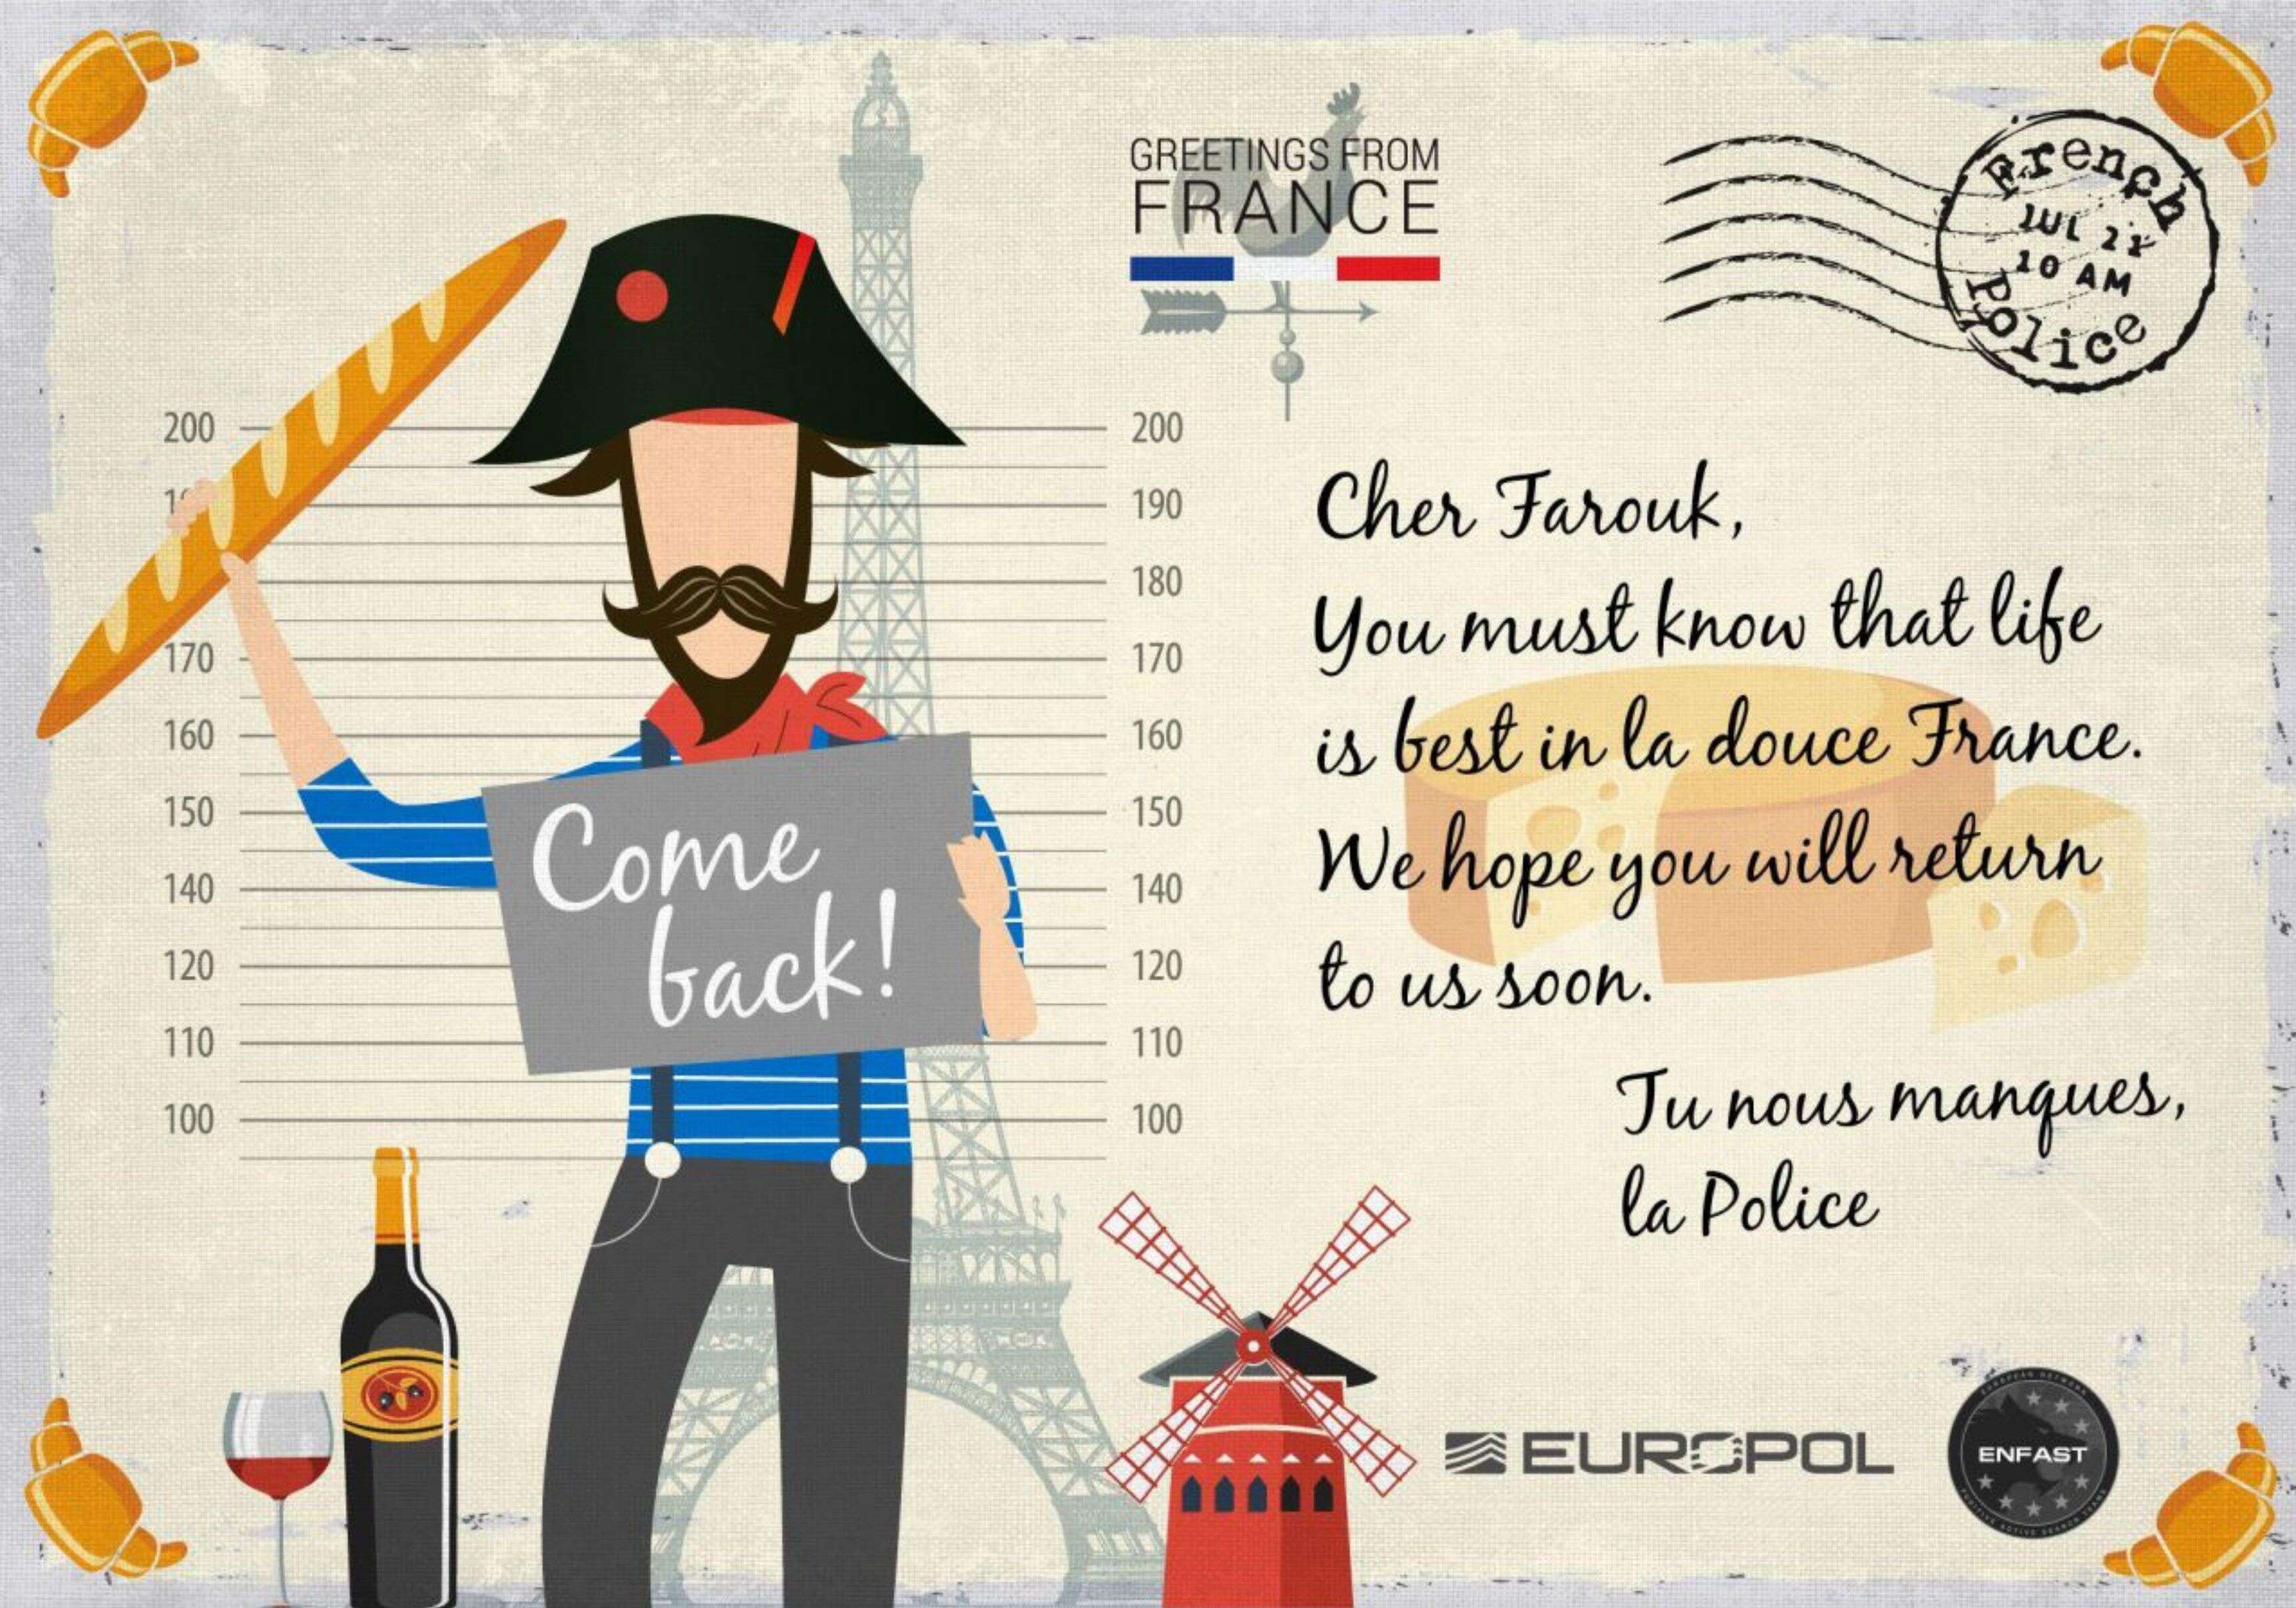 «Cher Farouk, tu dois savoir que la vie est meilleure dans la douce France. Nous espérons que tu reviendras bientôt» avait écrit Europol en 2017 sur cette carte postale diffusée sur le Web.